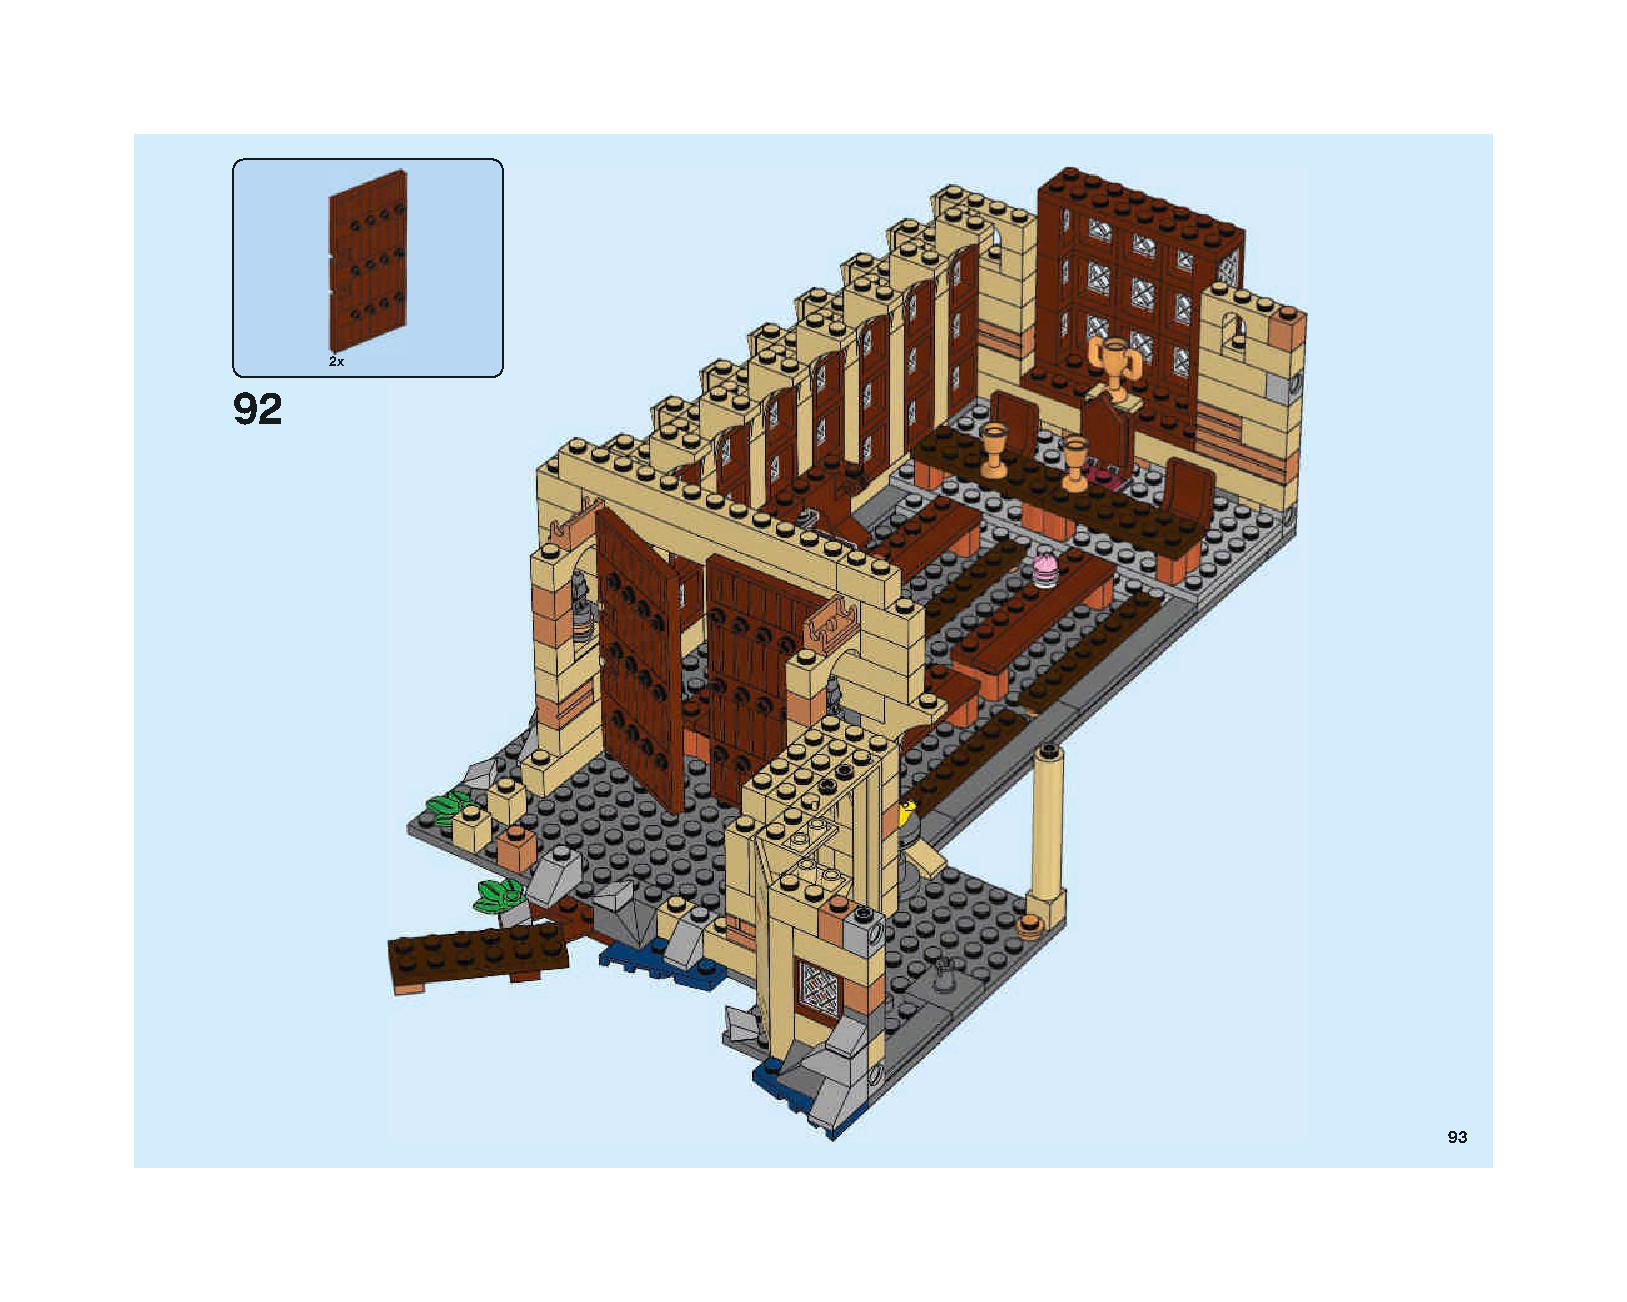 ホグワーツの大広間 75954 レゴの商品情報 レゴの説明書・組立方法 93 page